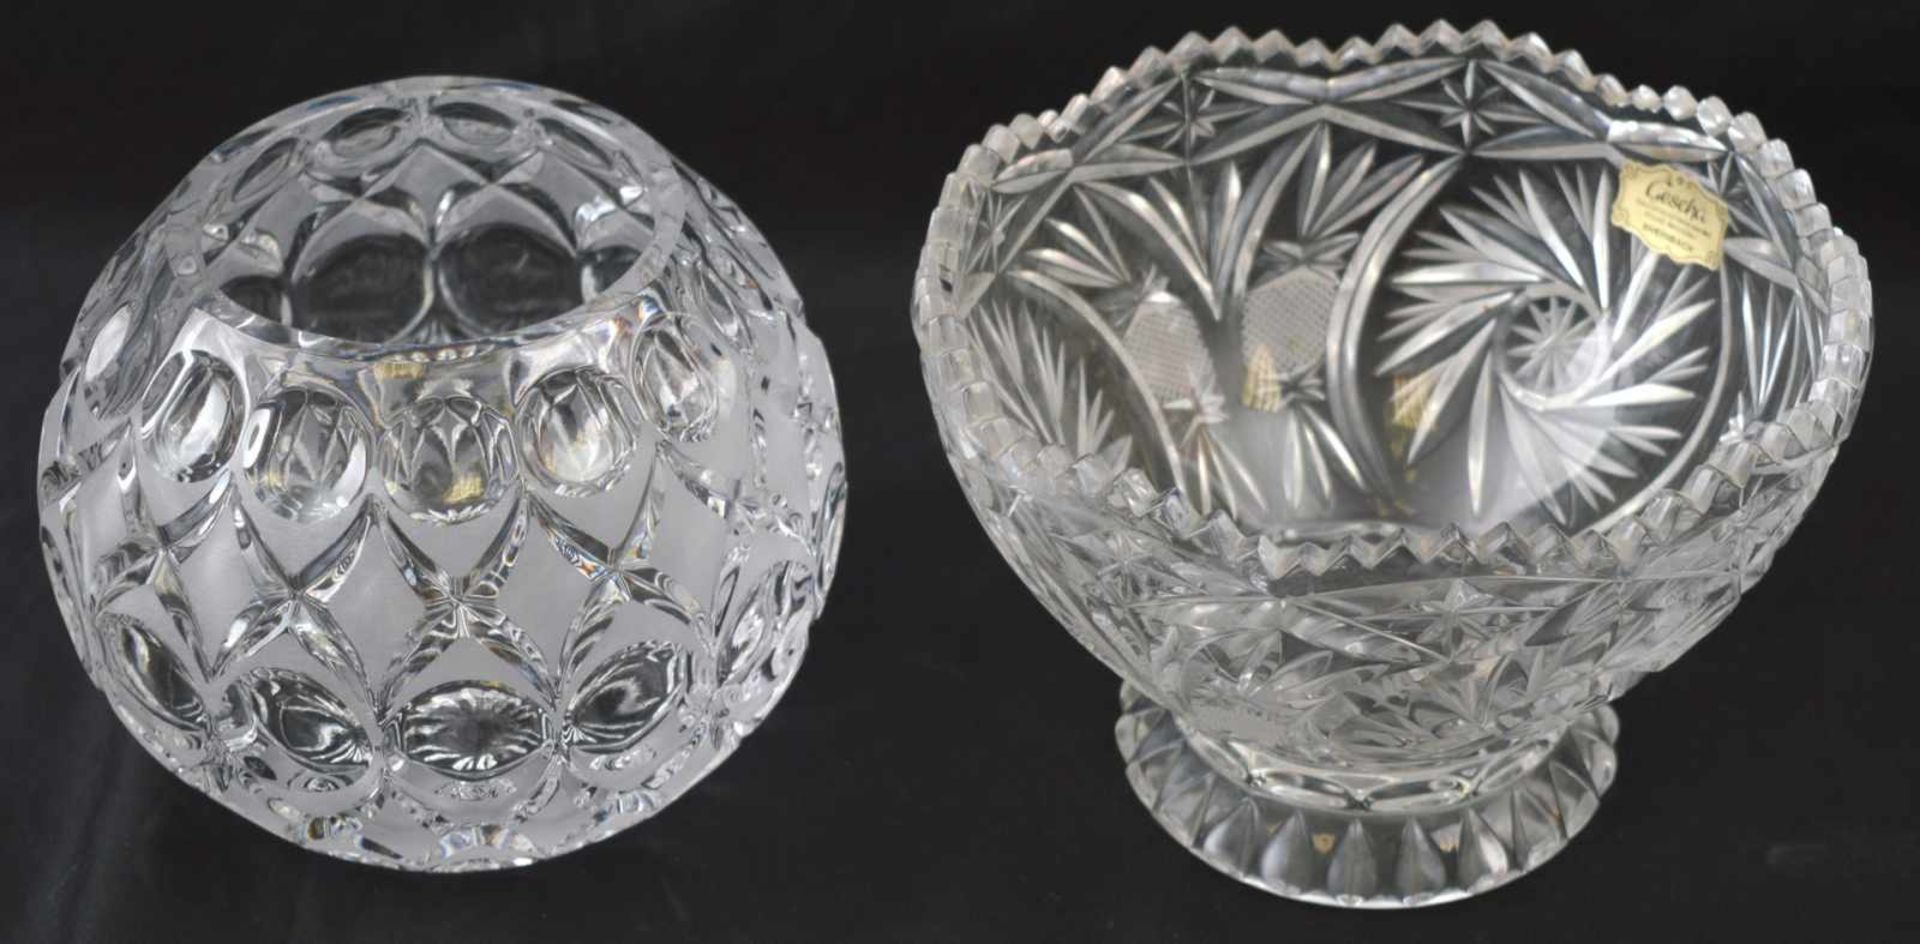 Vase und Schale farbl. Glas, rund, geschliffen verziert, H 11 cm, Dm 16 cm bzw. 10 cm